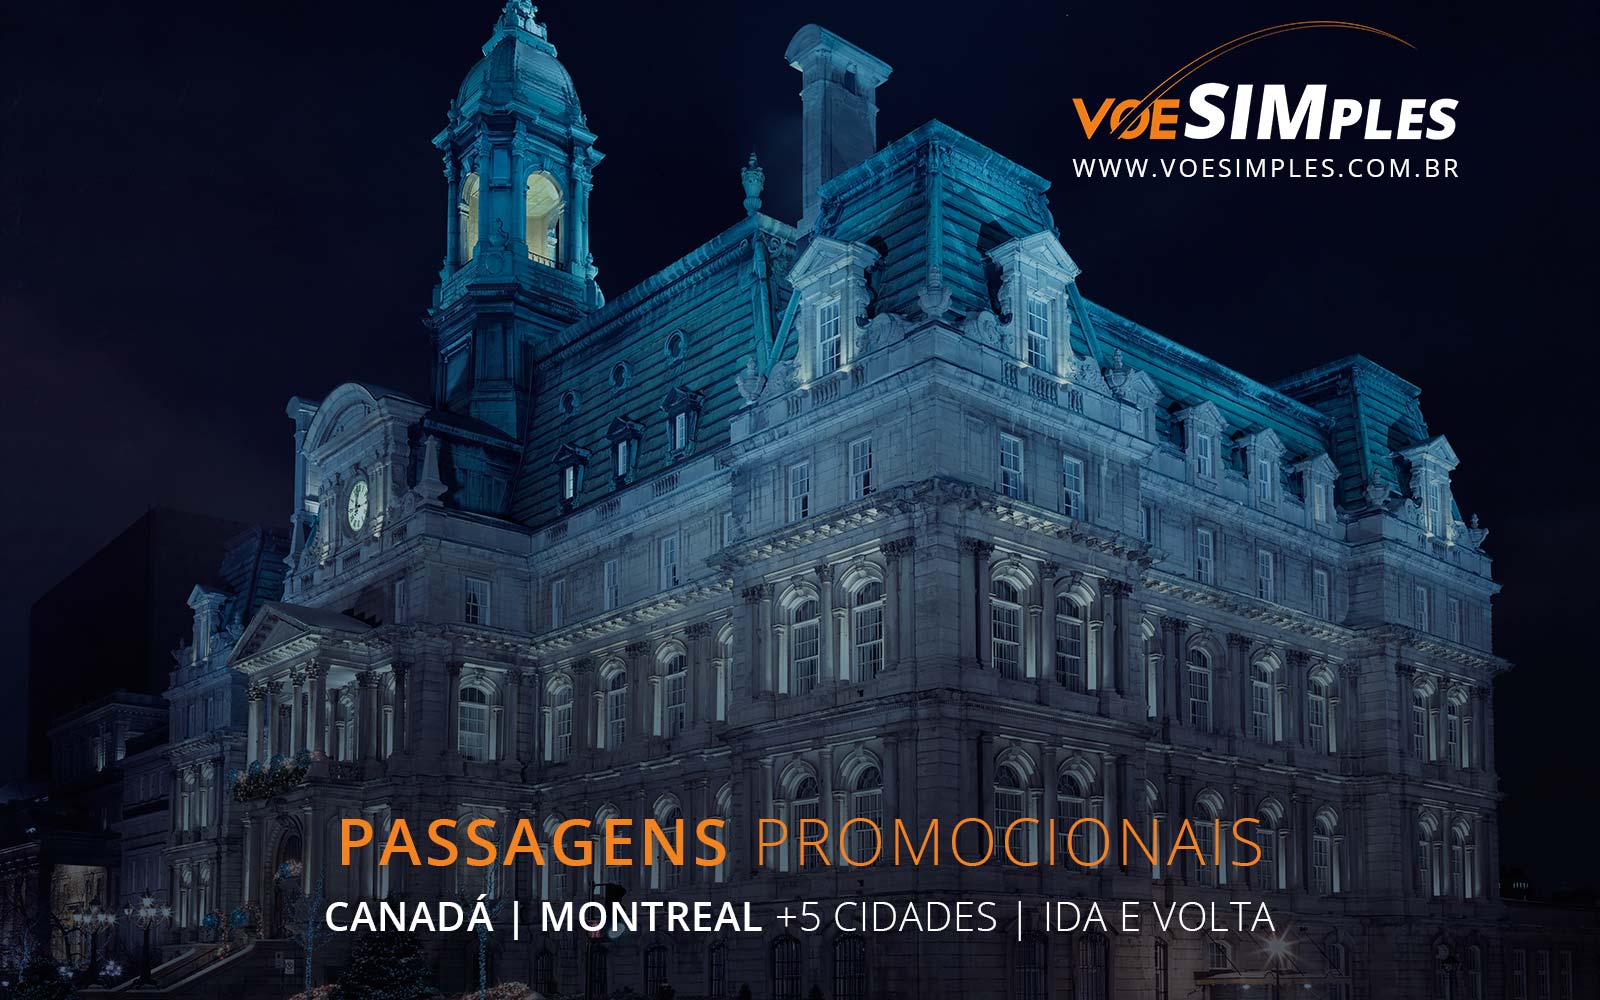 Passagens aéreas promocionais para Montreal, Vancouver, Toronto, Quebec e Ottawa no Canadá